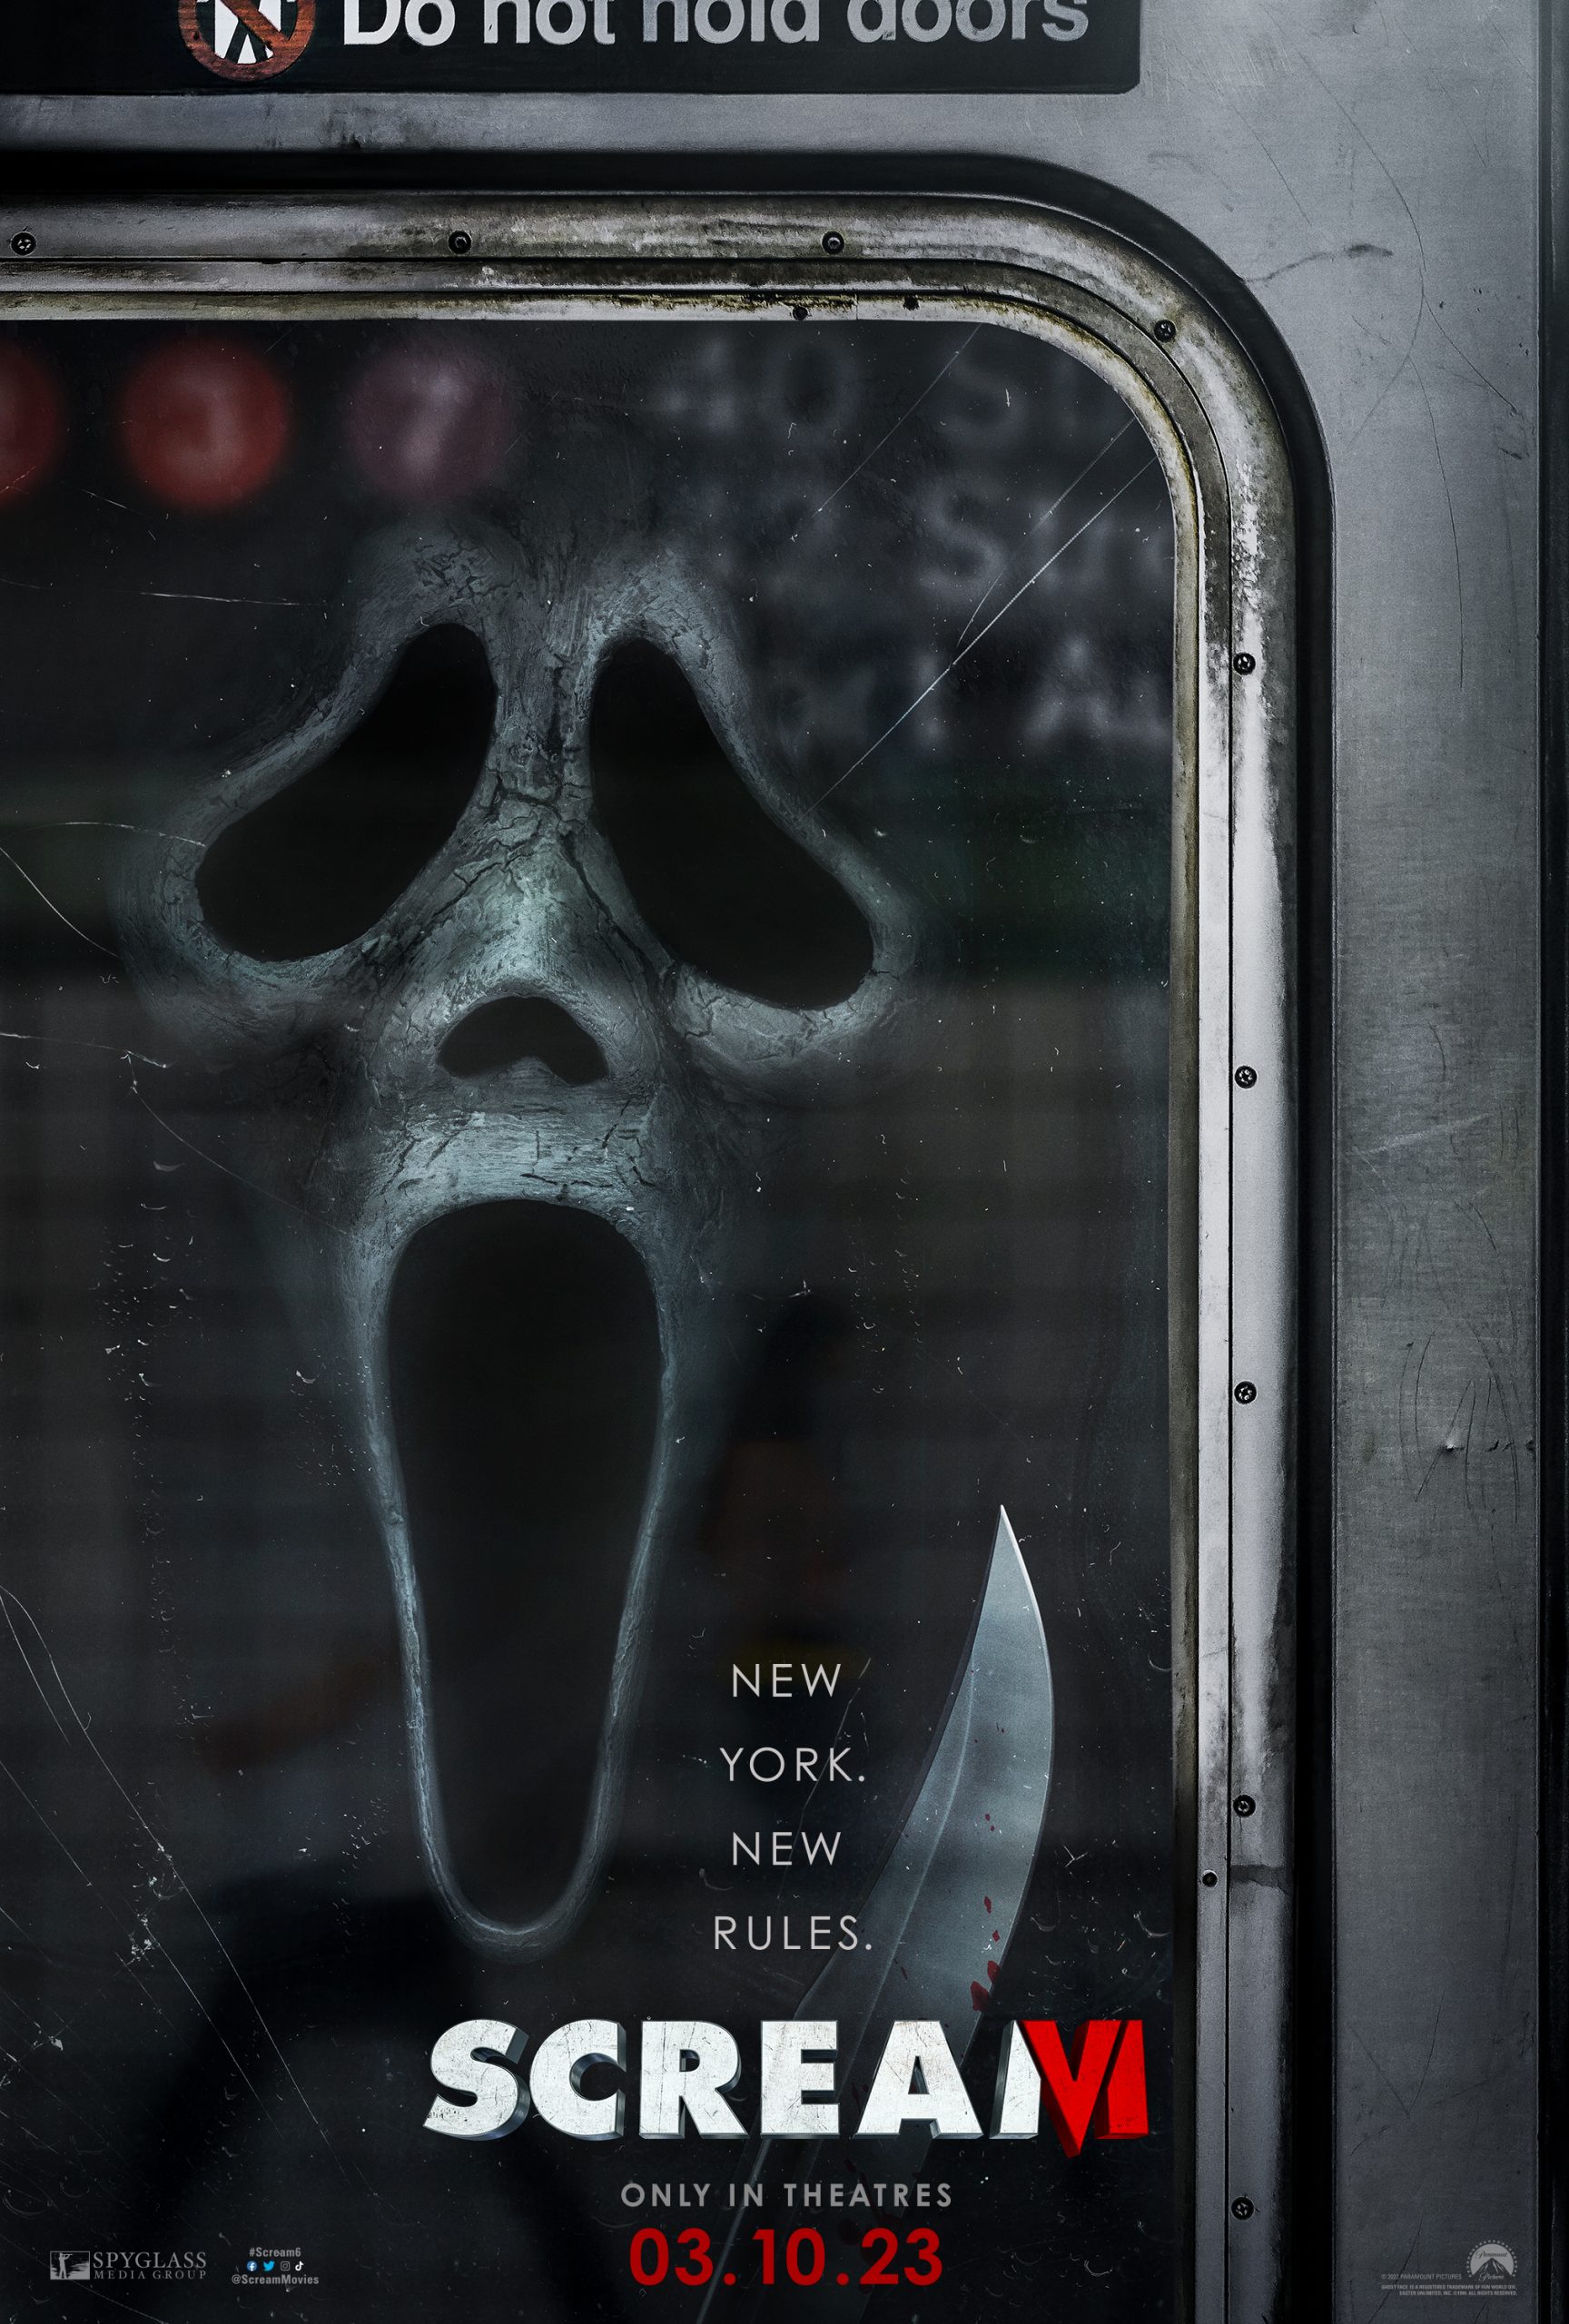 Scream 6 Review